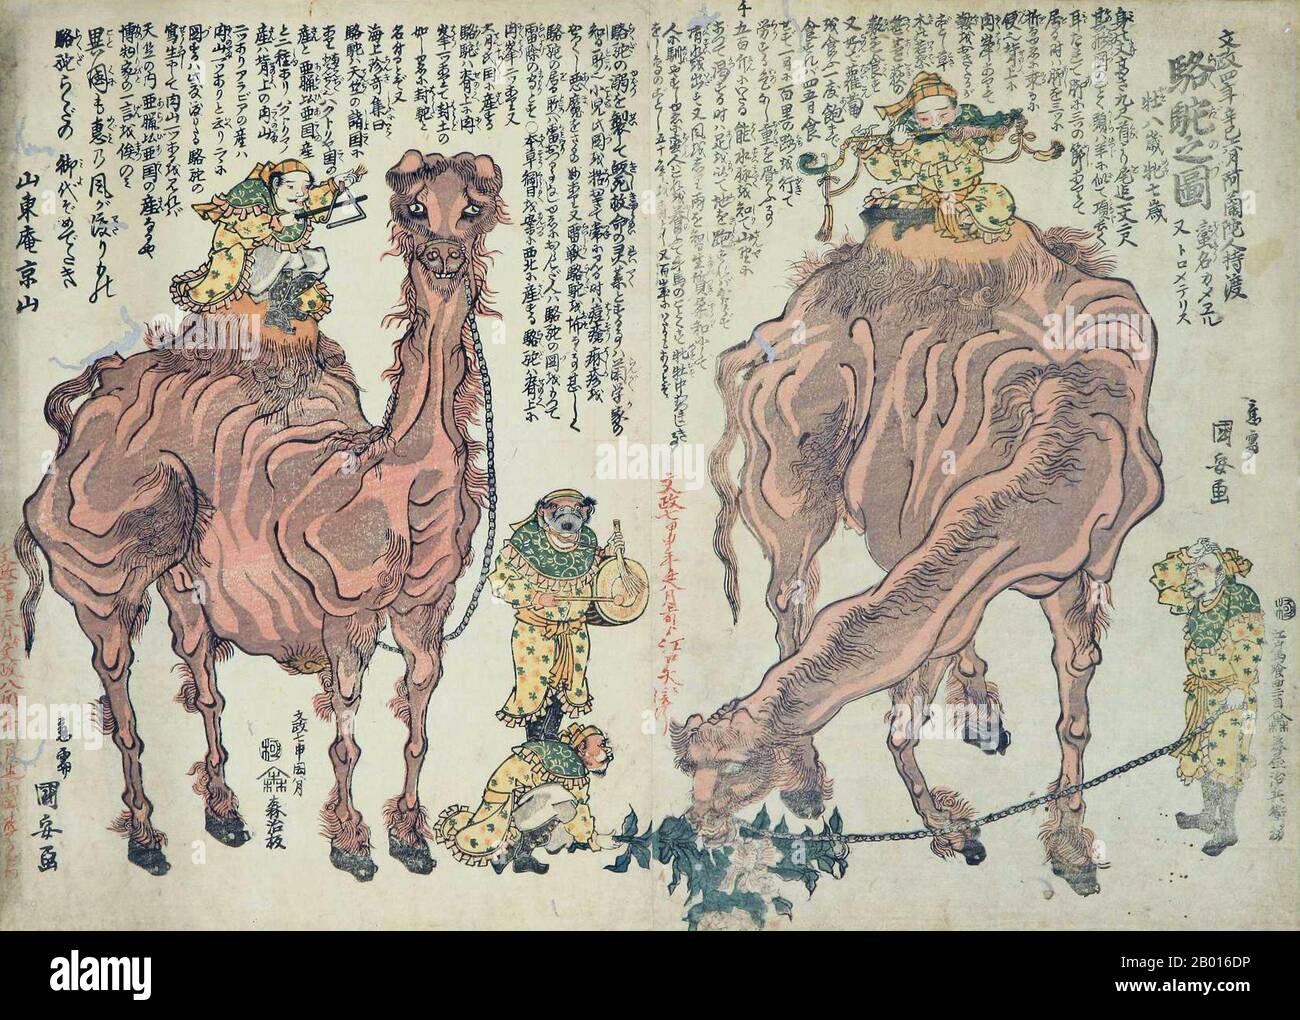 Japan: 'Kamele und Musiker'. Ukiyo-e Holzschnitt von Utagawa Kuniyasu (1794-1832), 1824. Die Kamele und Musiker sind von der Tang-Dynastie und der Seidenstraße, insbesondere von sogdischen oder zentralasiatischen Entertainern am Tang-Hof, redolent. Utagawa Kuniyasu, geboren als Yasugoro und auch bekannt als Ipposai und Nishikawa Yasunobu, war ein relativ beliebter japanischer Künstler aus der Utagawa-Schule. Er wurde von Utagawa Toyokuni unterrichtet und illustrierte während seiner Karriere rund hundert Bücher. Er entwarf auch Hunderte von eigenständigen Grafiken von Schauspielern (yakusha-e) und Schönheiten (bijing-ga). Stockfoto